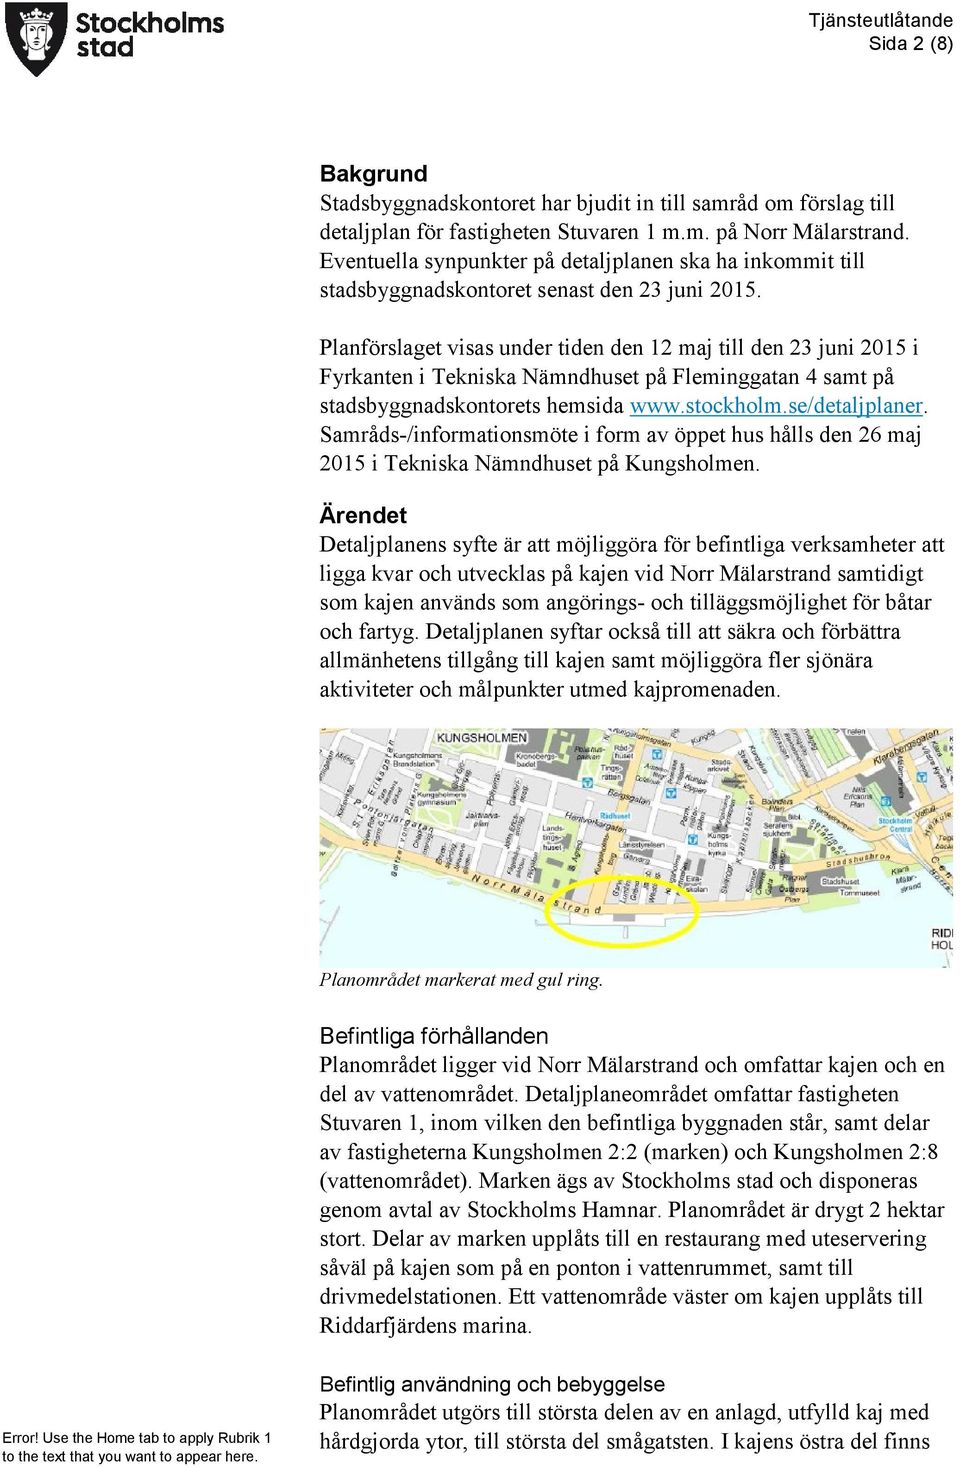 Planförslaget visas under tiden den 12 maj till den 23 juni 2015 i Fyrkanten i Tekniska Nämndhuset på Fleminggatan 4 samt på stadsbyggnadskontorets hemsida www.stockholm.se/detaljplaner.